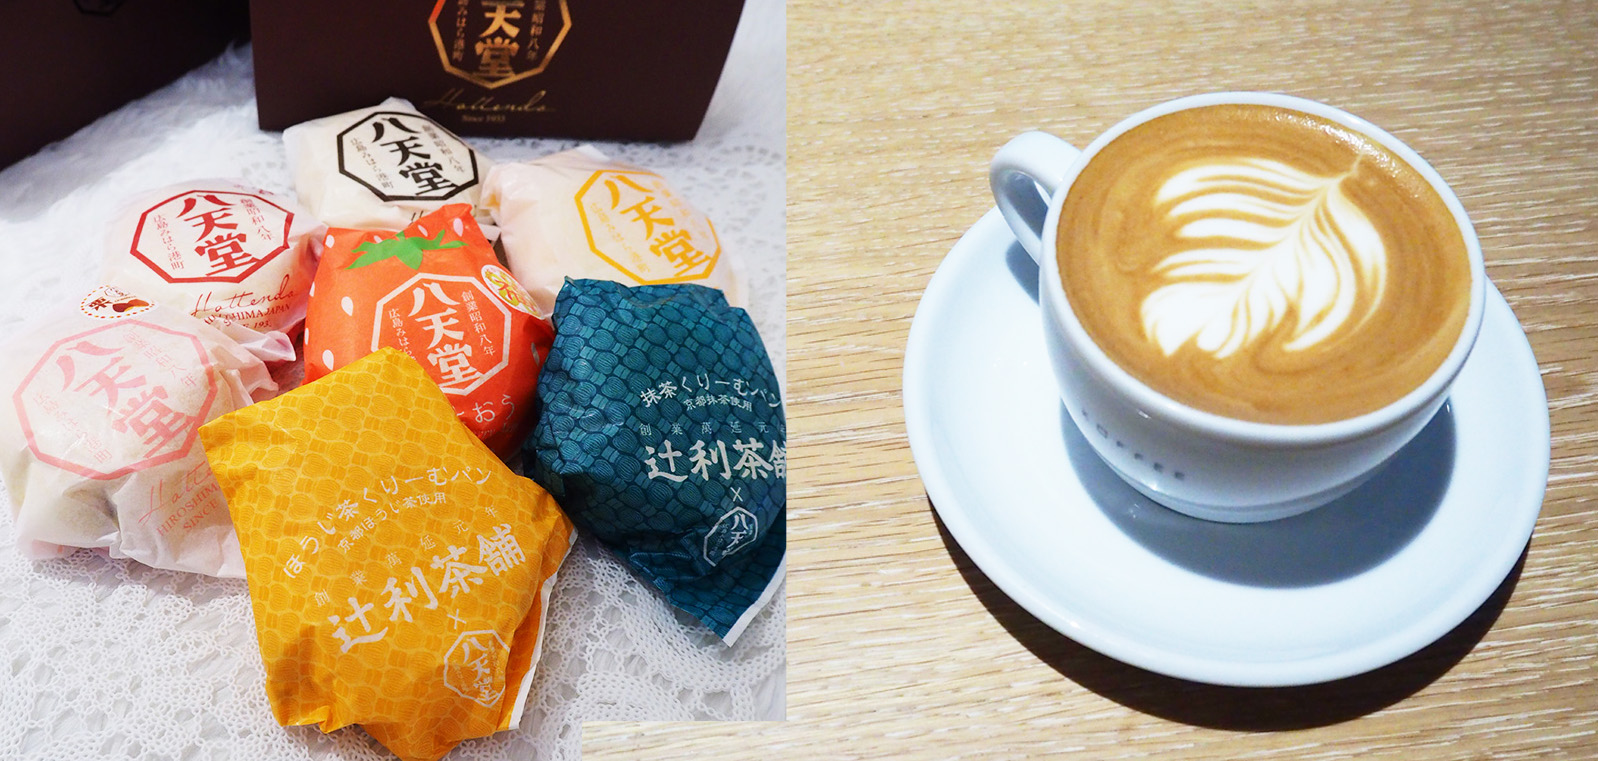 【編輯嘆店】難以抗拒的日式滋味 這樣的下午茶太幸福！